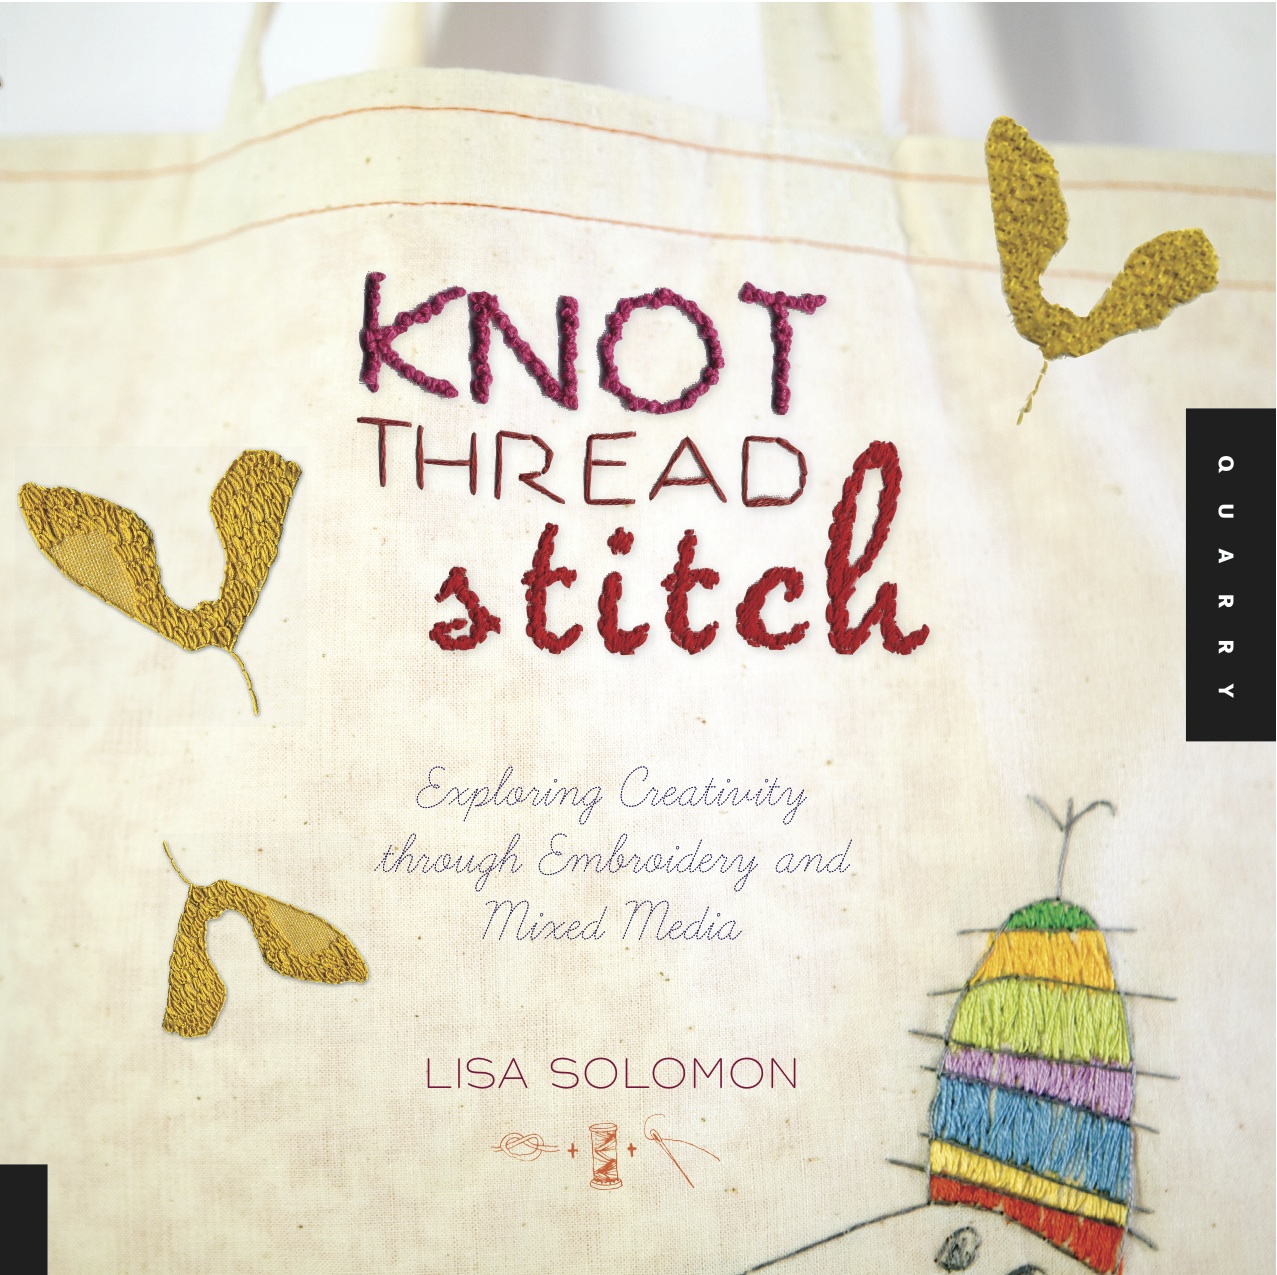 Knot Thread Stitch